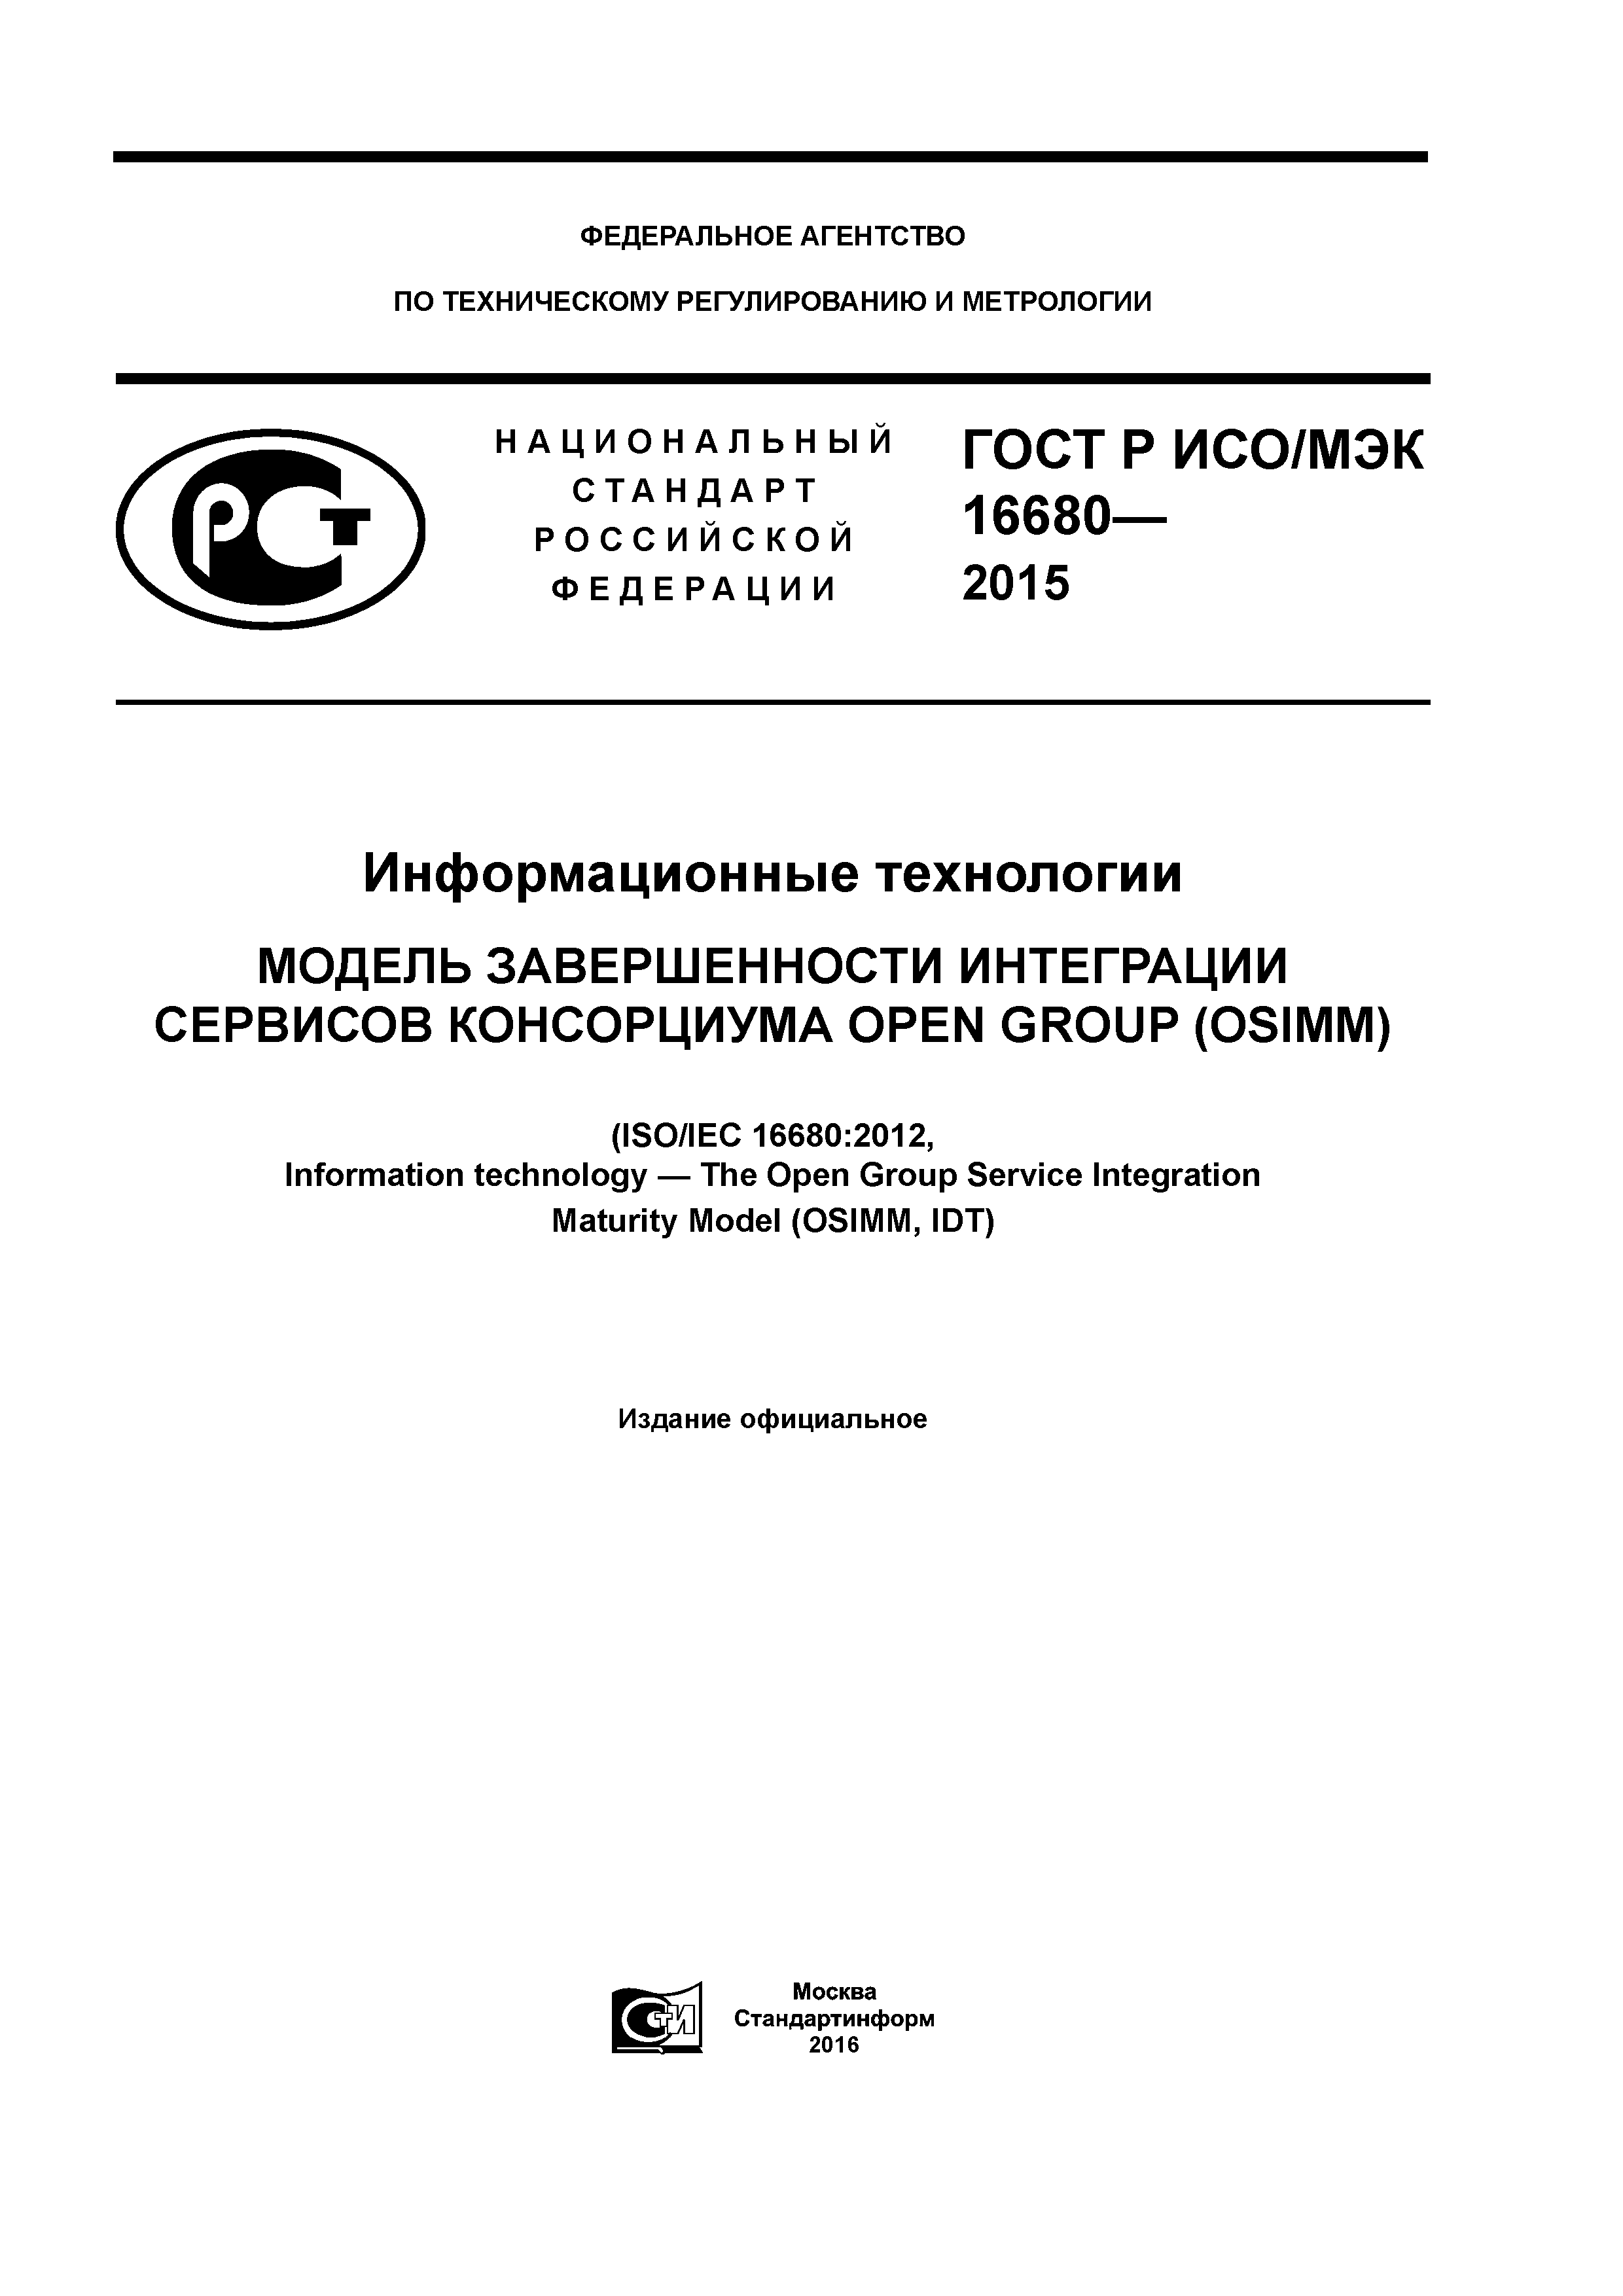 ГОСТ Р ИСО/МЭК 16680-2015